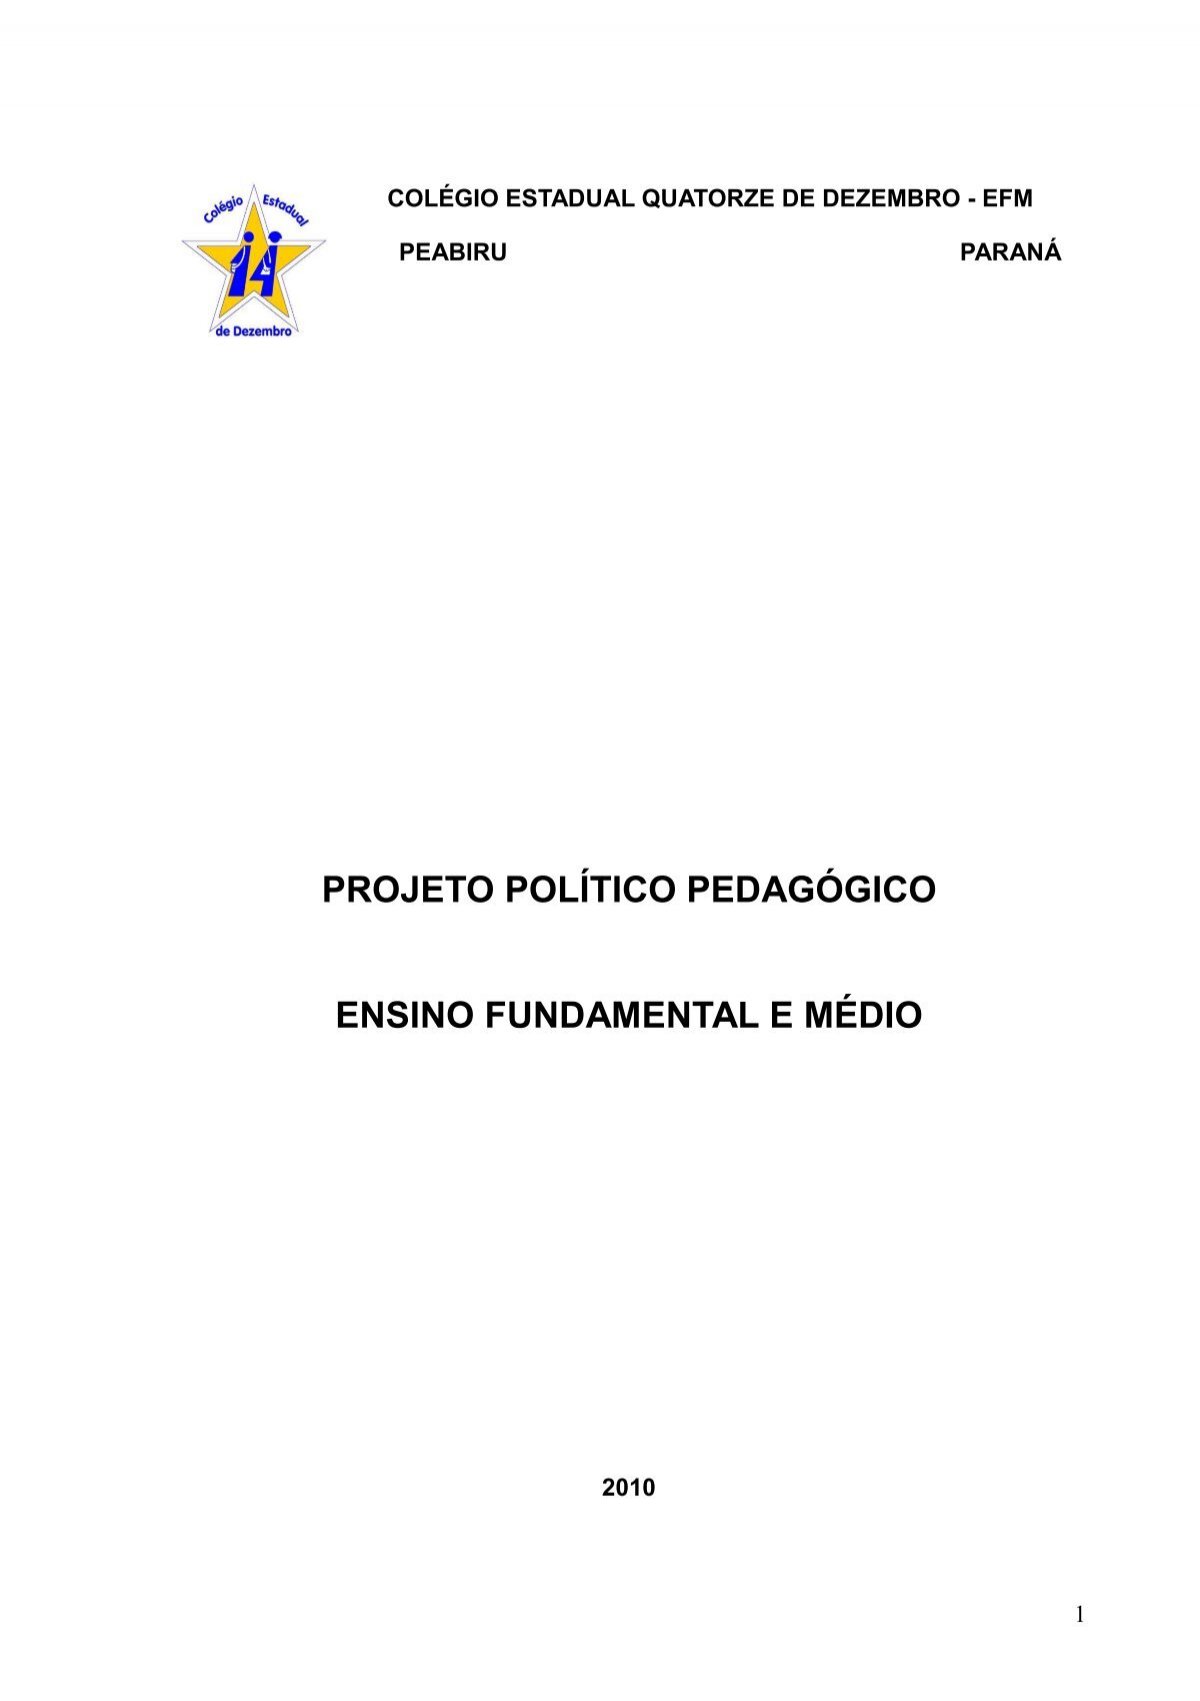 Projeto Político Pedagógico - PPP - COLÉGIO ESTADUAL COSTA